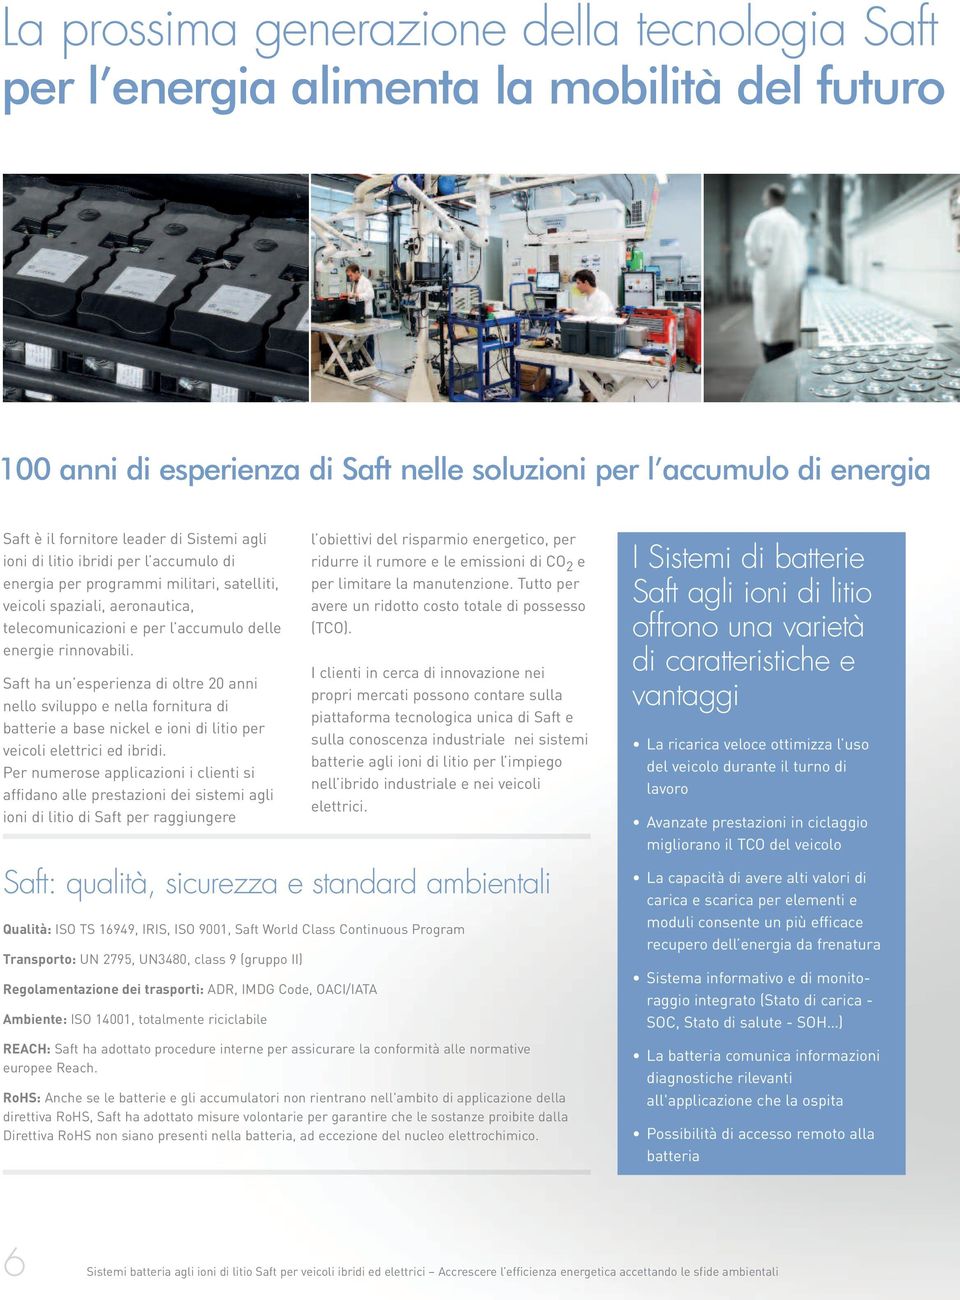 Saft ha un esperienza di oltre 20 anni nello sviluppo e nella fornitura di batterie a base nickel e ioni di litio per veicoli elettrici ed ibridi.